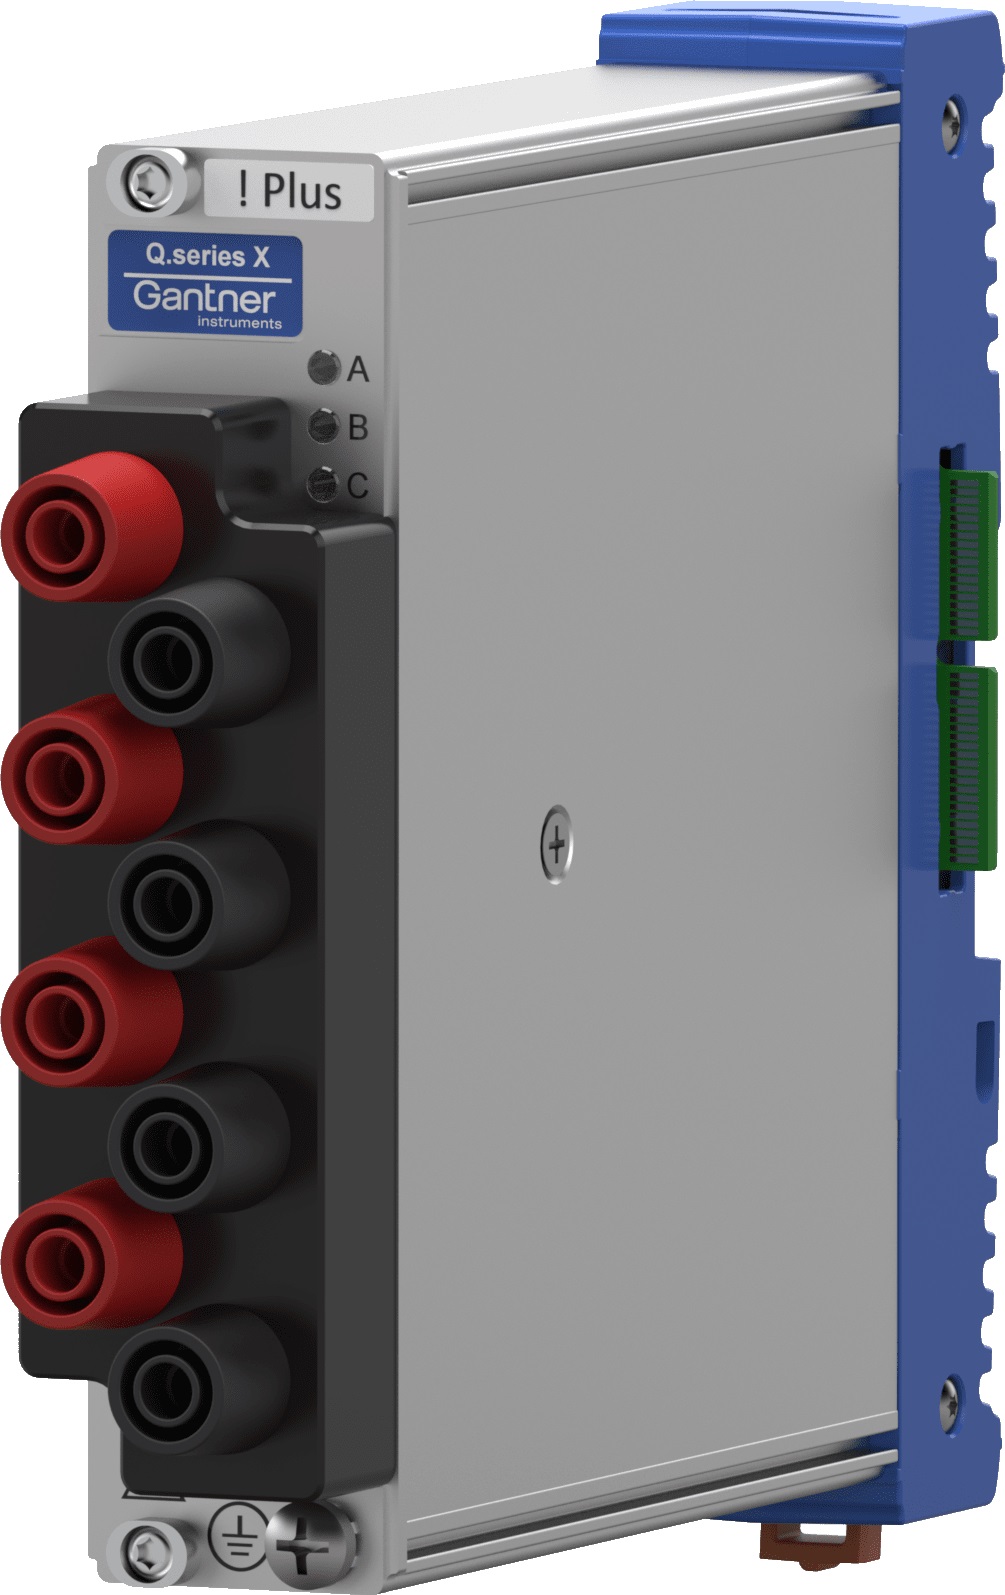 Q.bloxx XL A128-PLUS - Datenerfassungsmodul 4-Kanal Analogeingangsmodul für hohe Spannungen